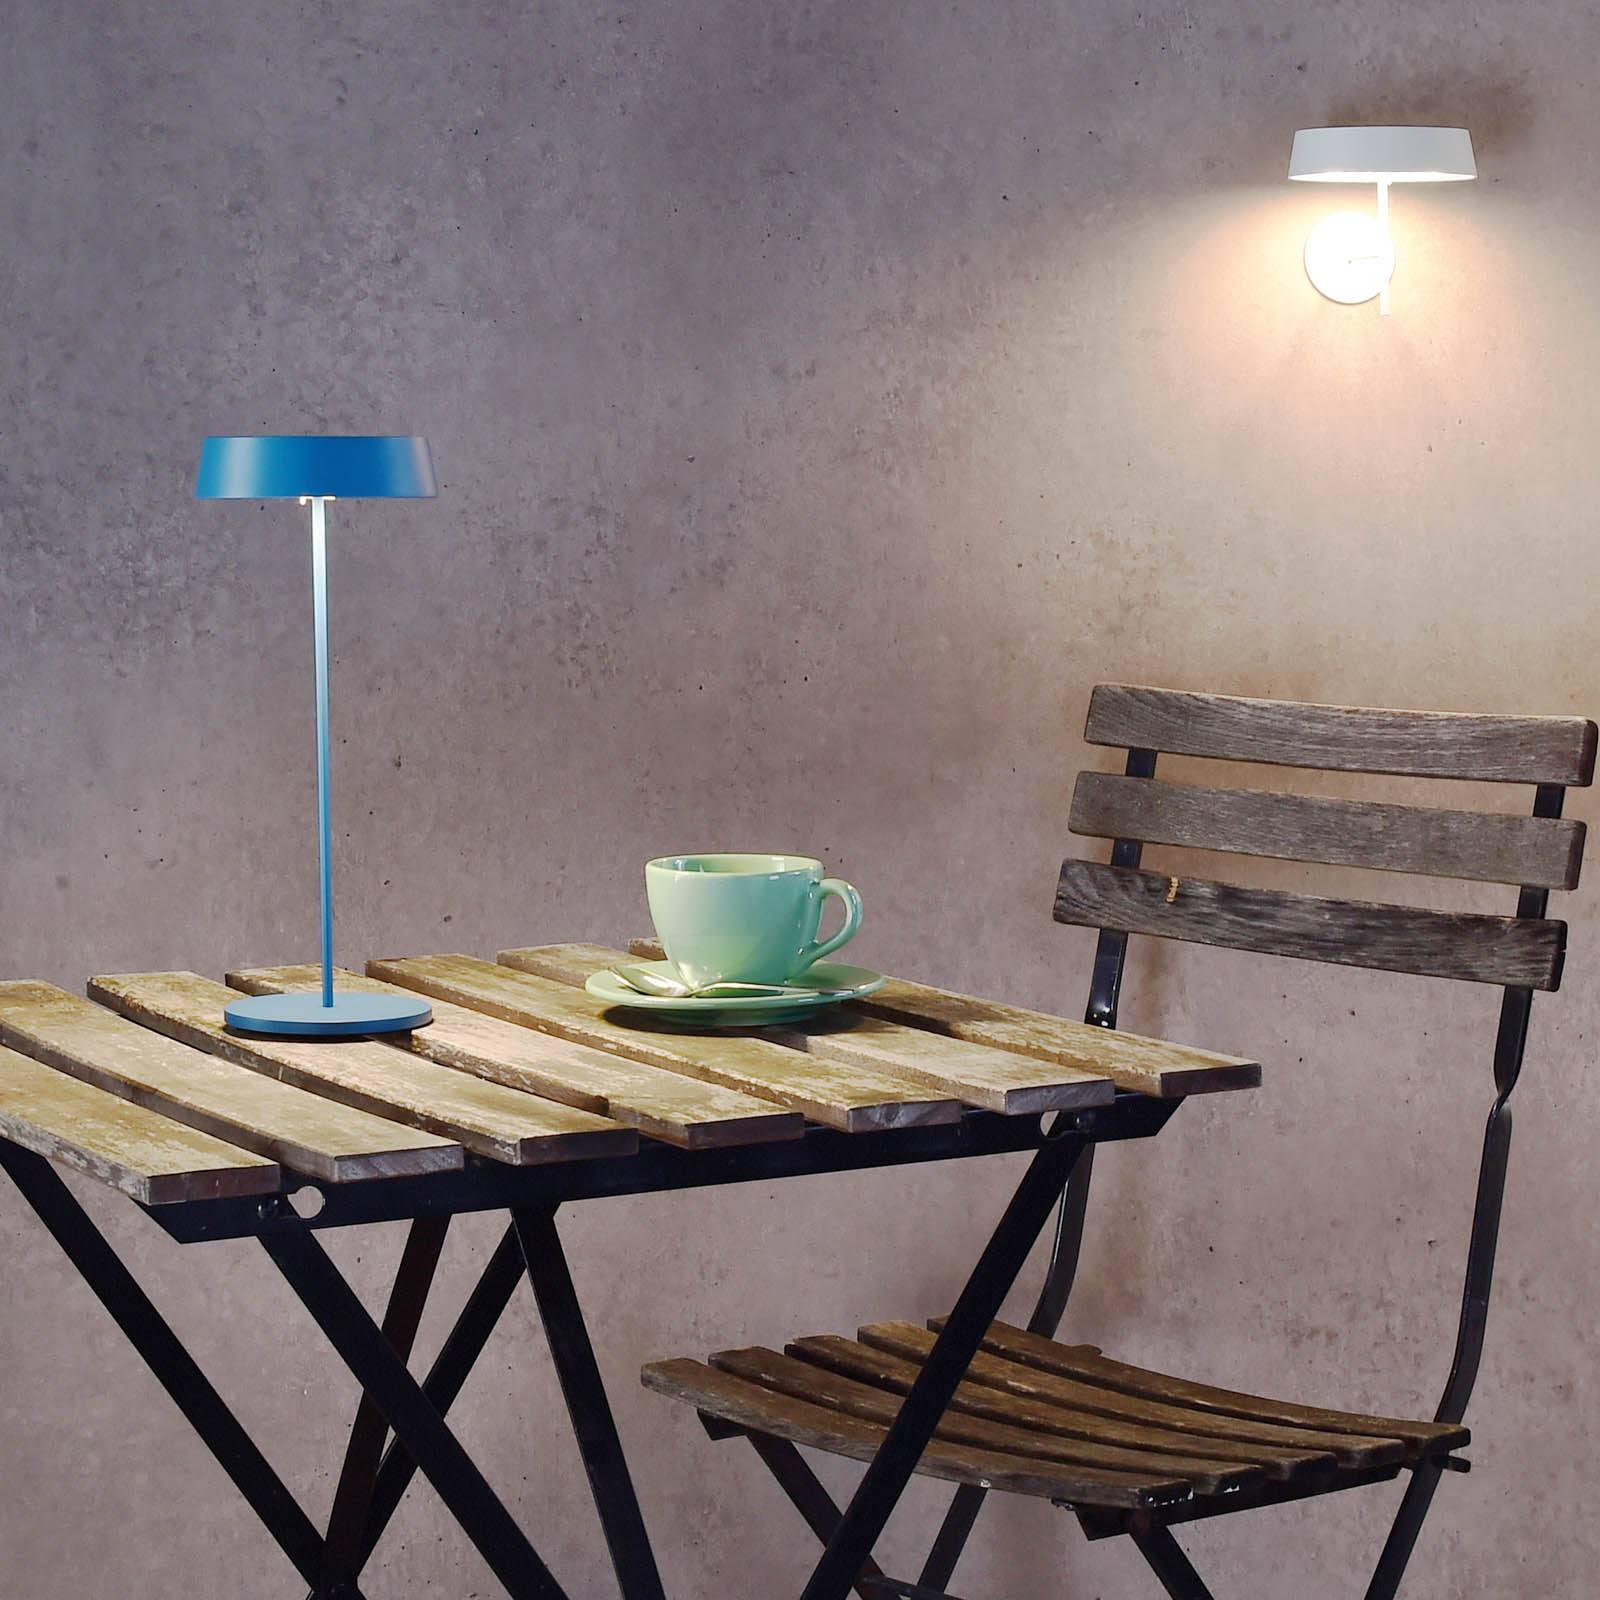 Deko-Light LED stolní lampa Miram s baterií stmívatelná modrá